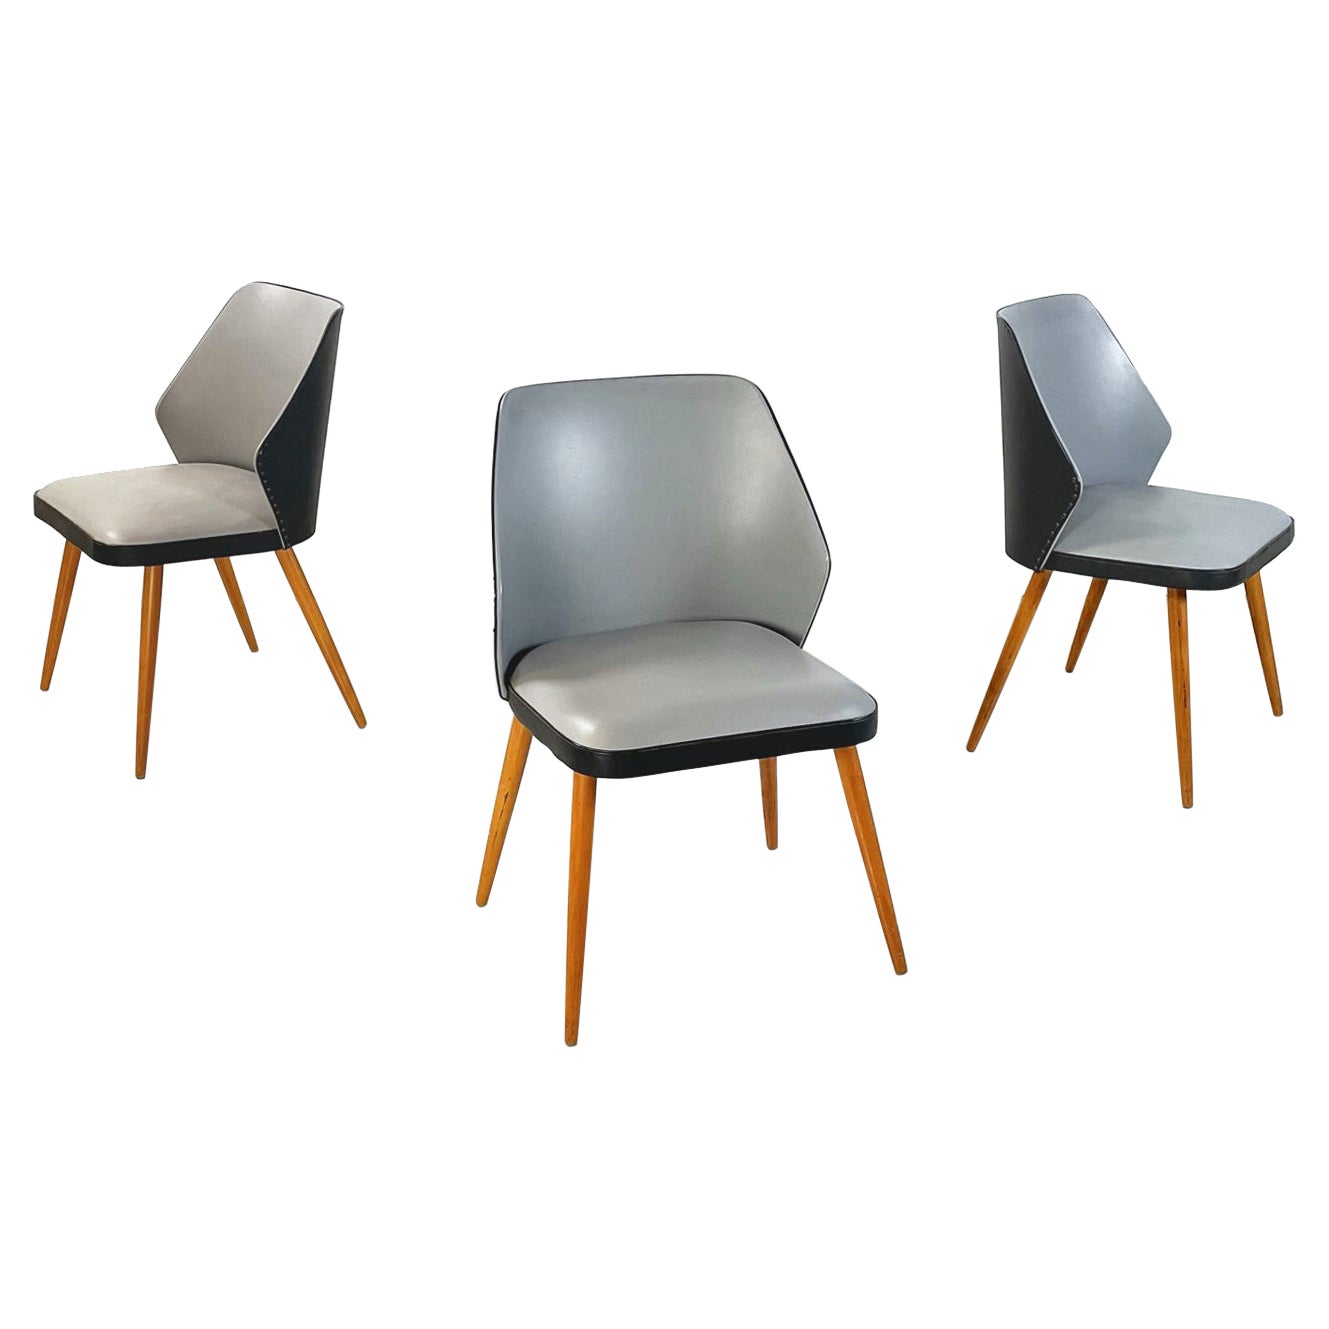 Moderne italienische Stühle aus schwarzem und grauem Leder und Holz, 1980er Jahre